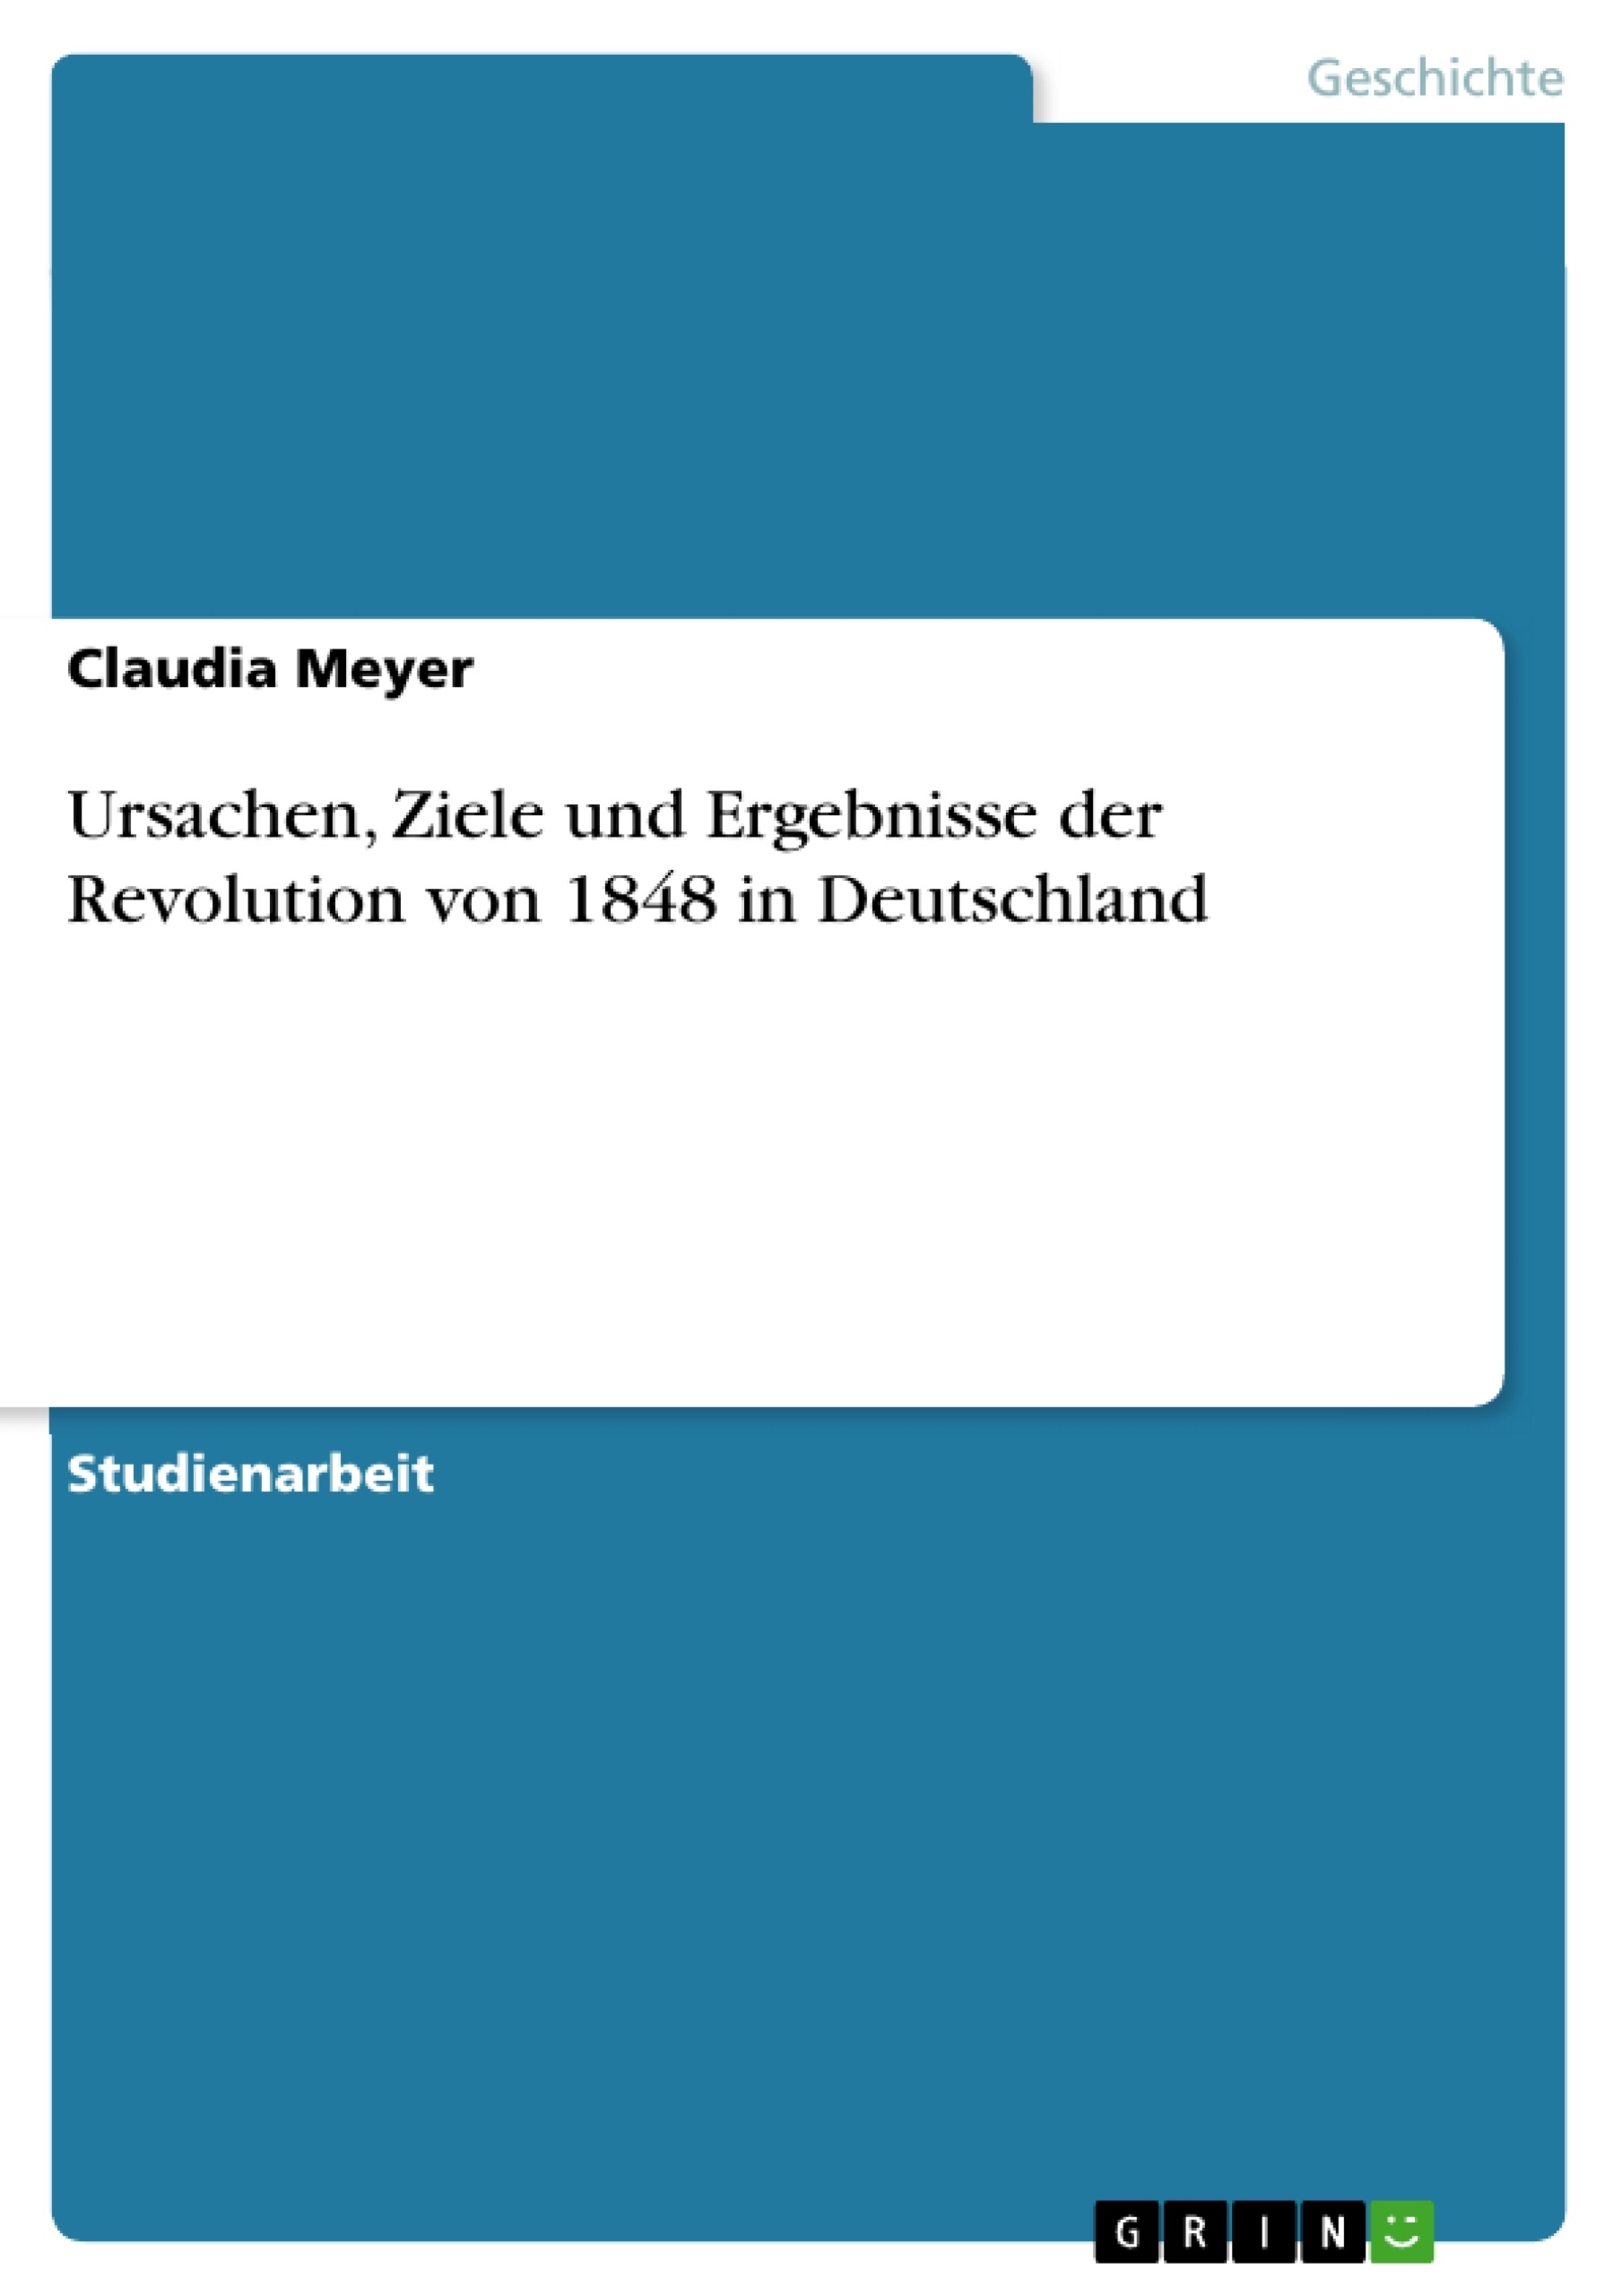 Title: Ursachen, Ziele und Ergebnisse der Revolution von 1848 in Deutschland